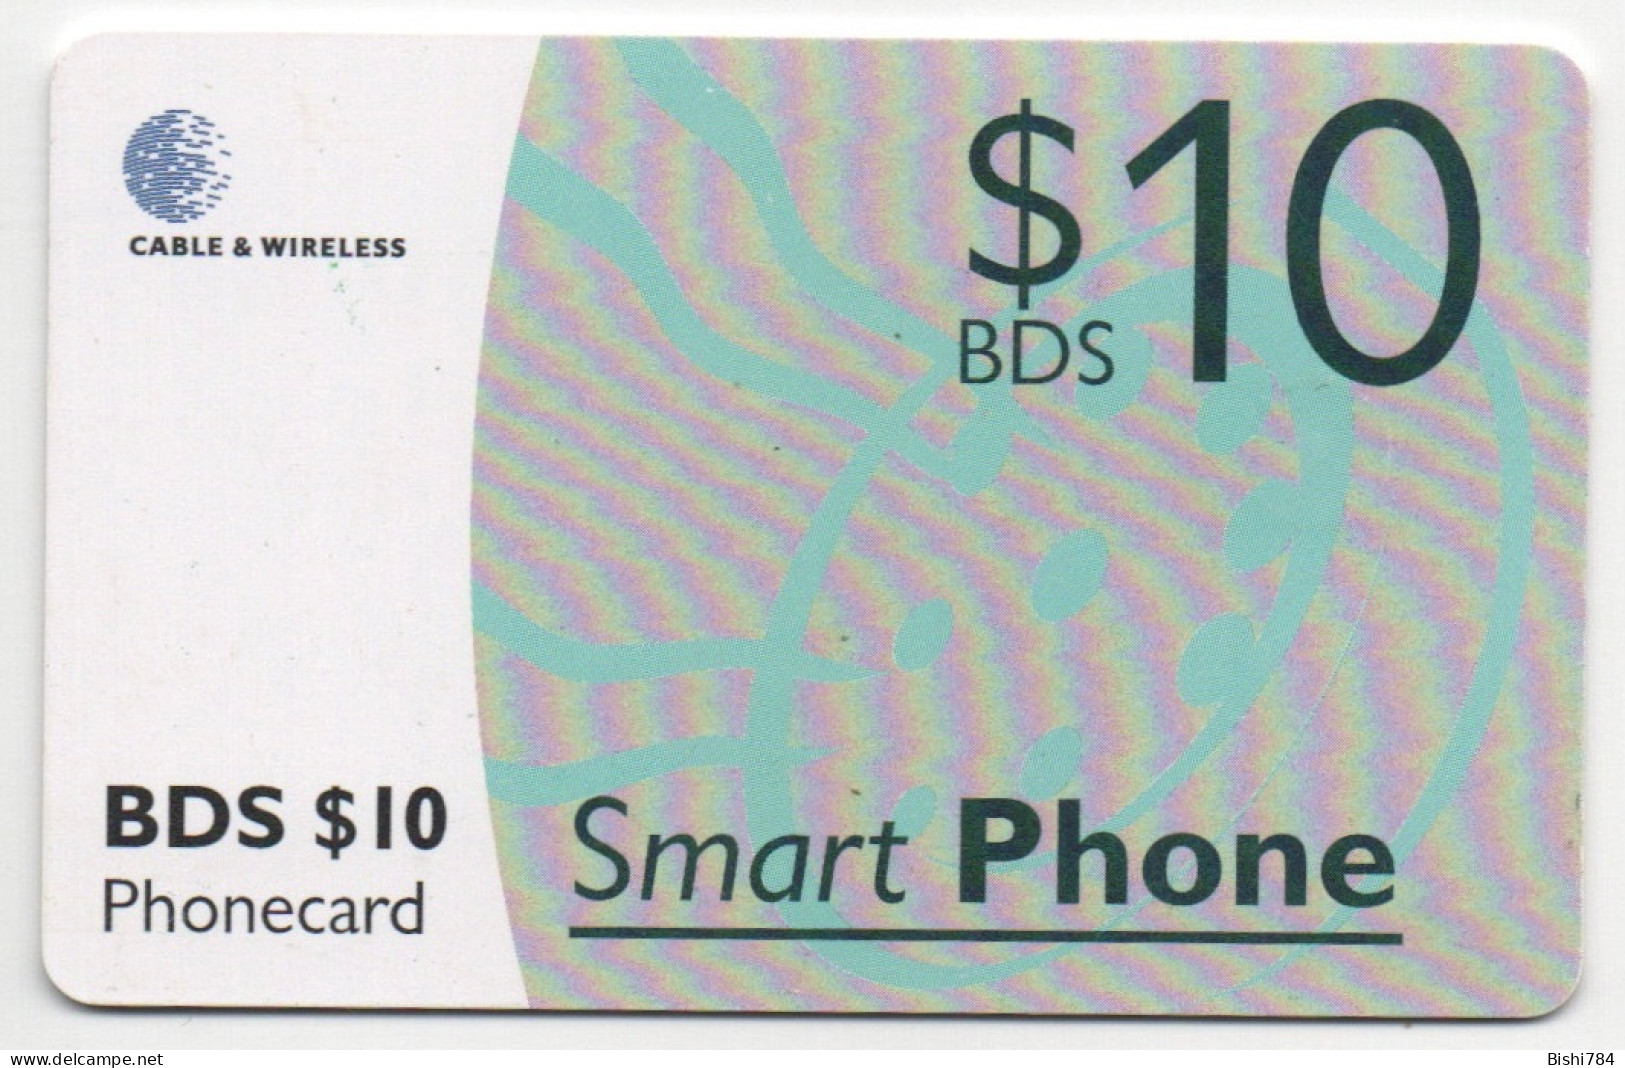 Barbados - SmartPhone $10 (Black Chip) - Barbados